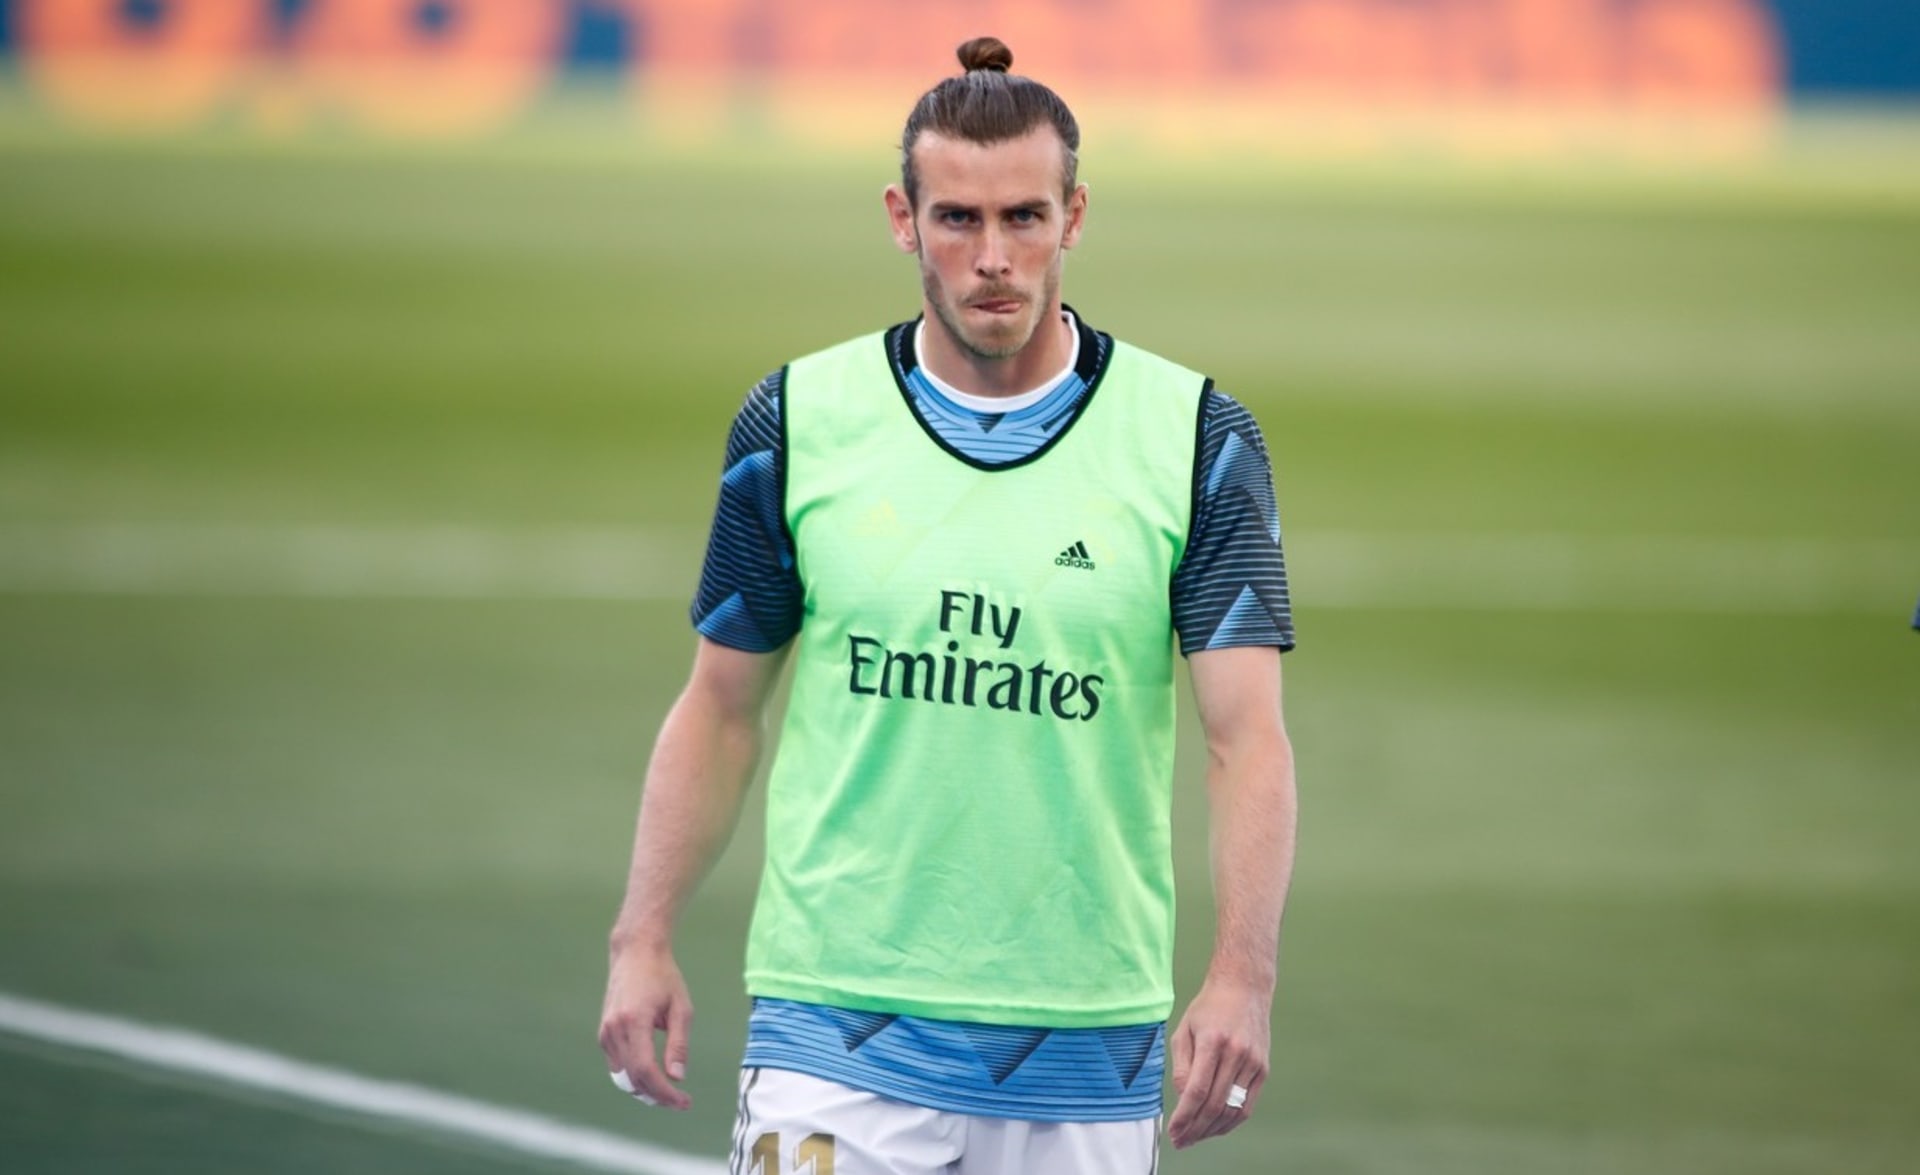 Nejdražší náhradník na světě. I tak se dal nazvat Gareth Bale na základě poslední sezony v Realu Madrid.